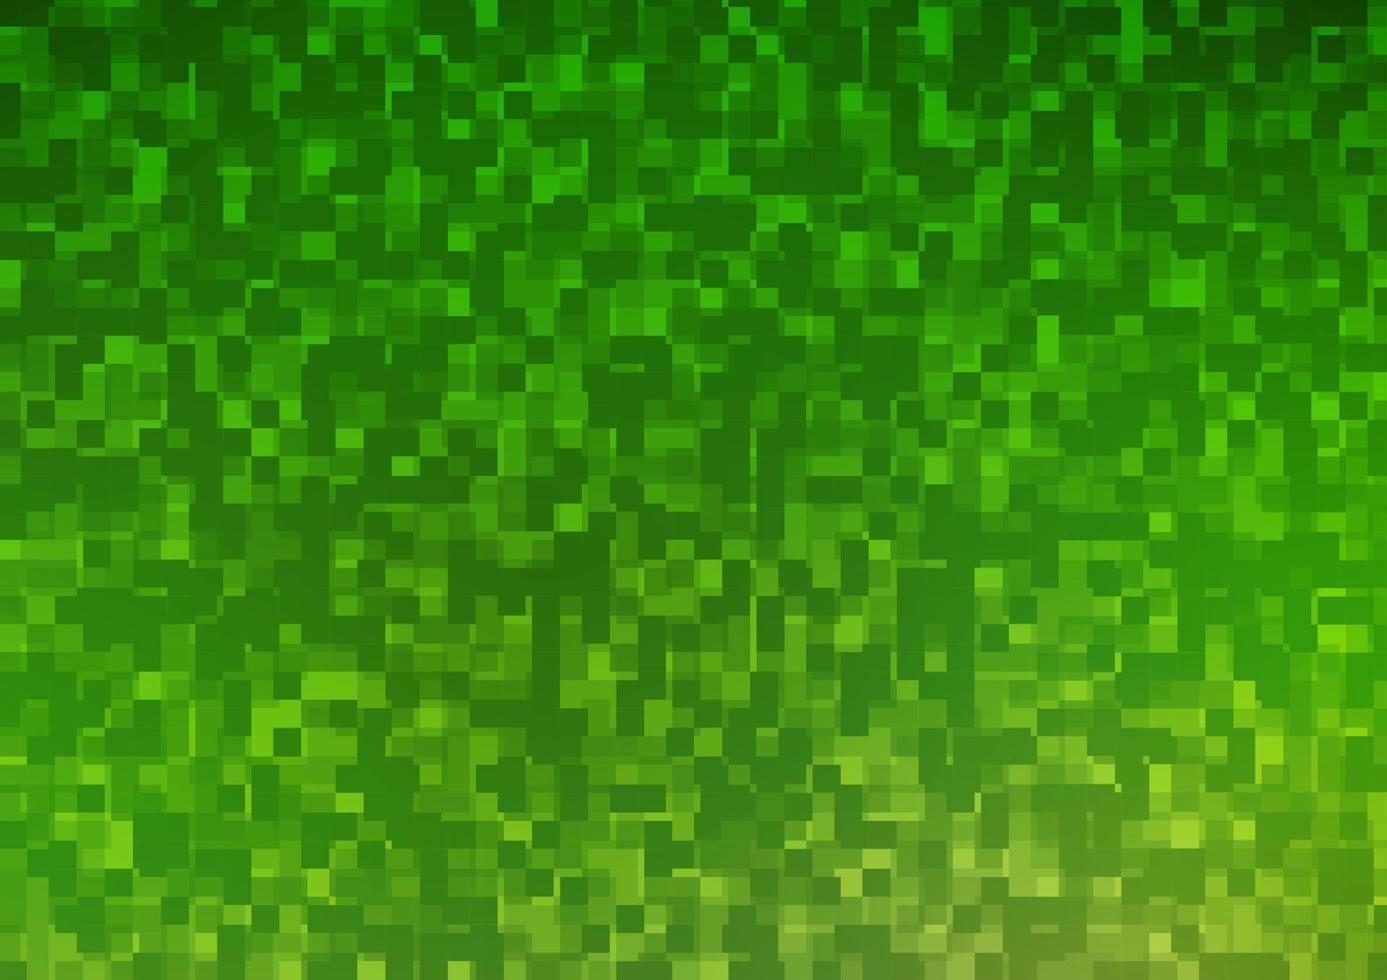 cenário de vetor verde claro com retângulos, quadrados.